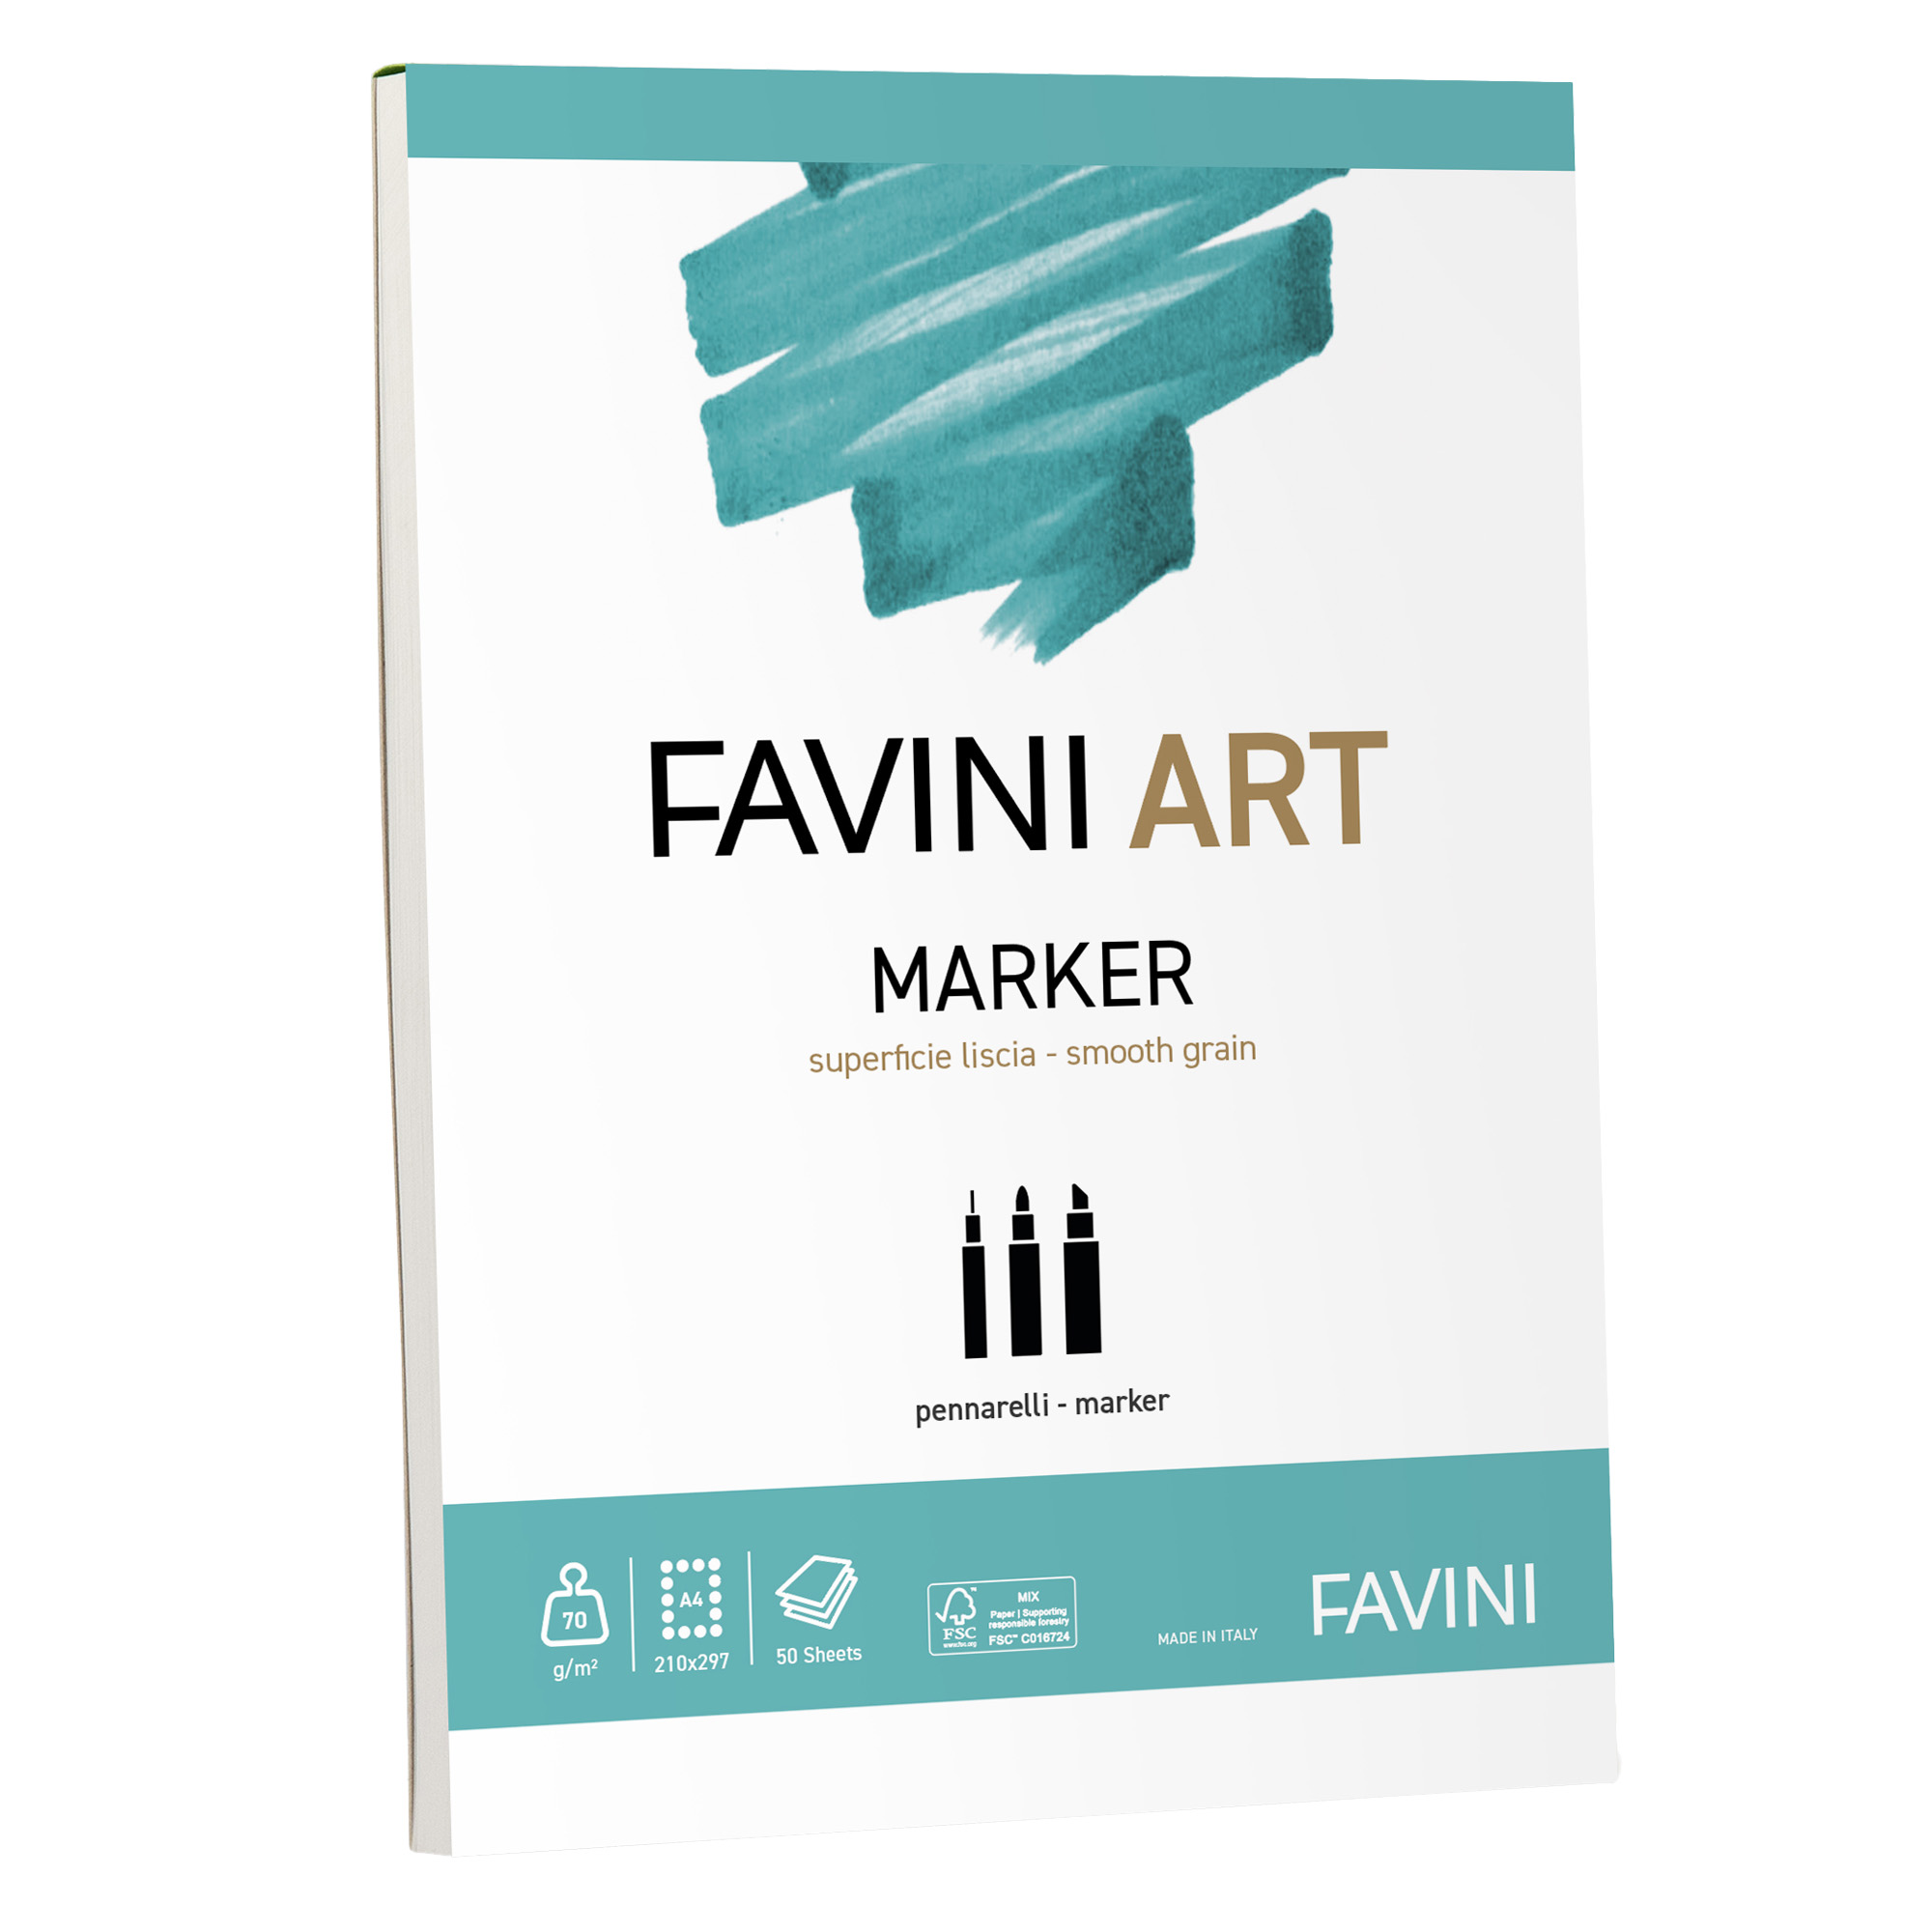 CF5 FAVINI ART MARKER COLLATO 70G